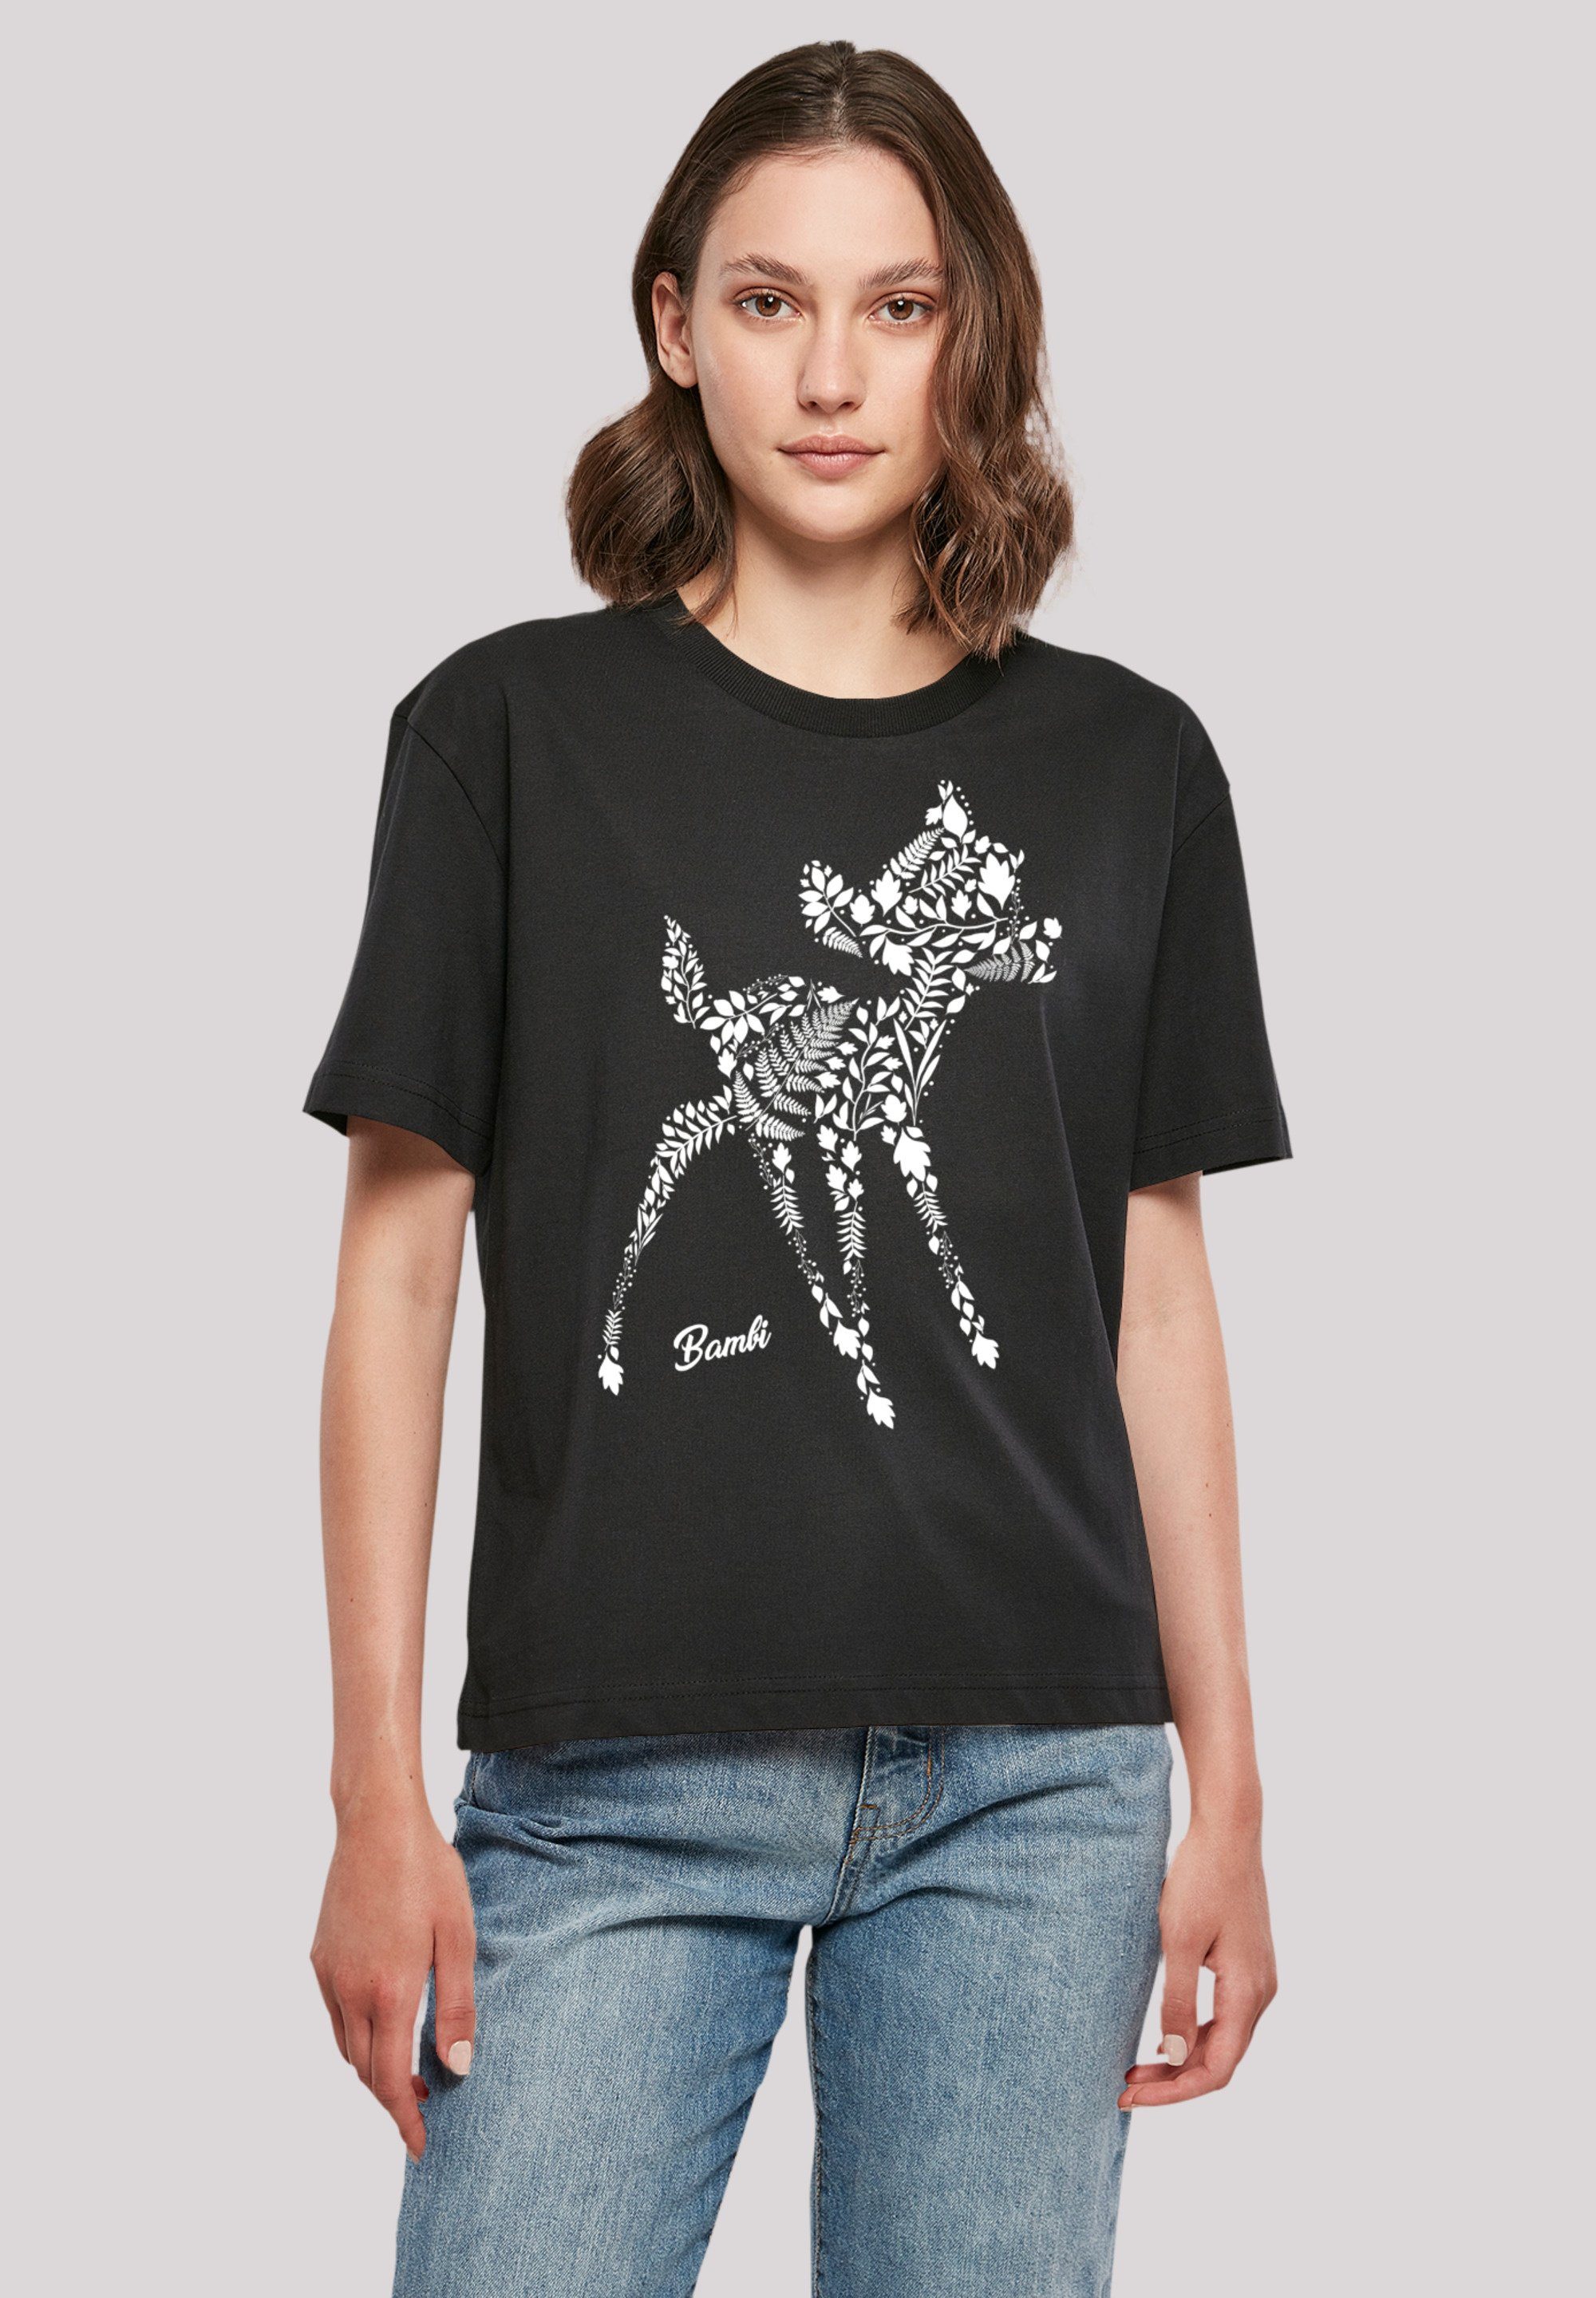 Bambi Mode online kaufen » Bambi Bekleidung | OTTO